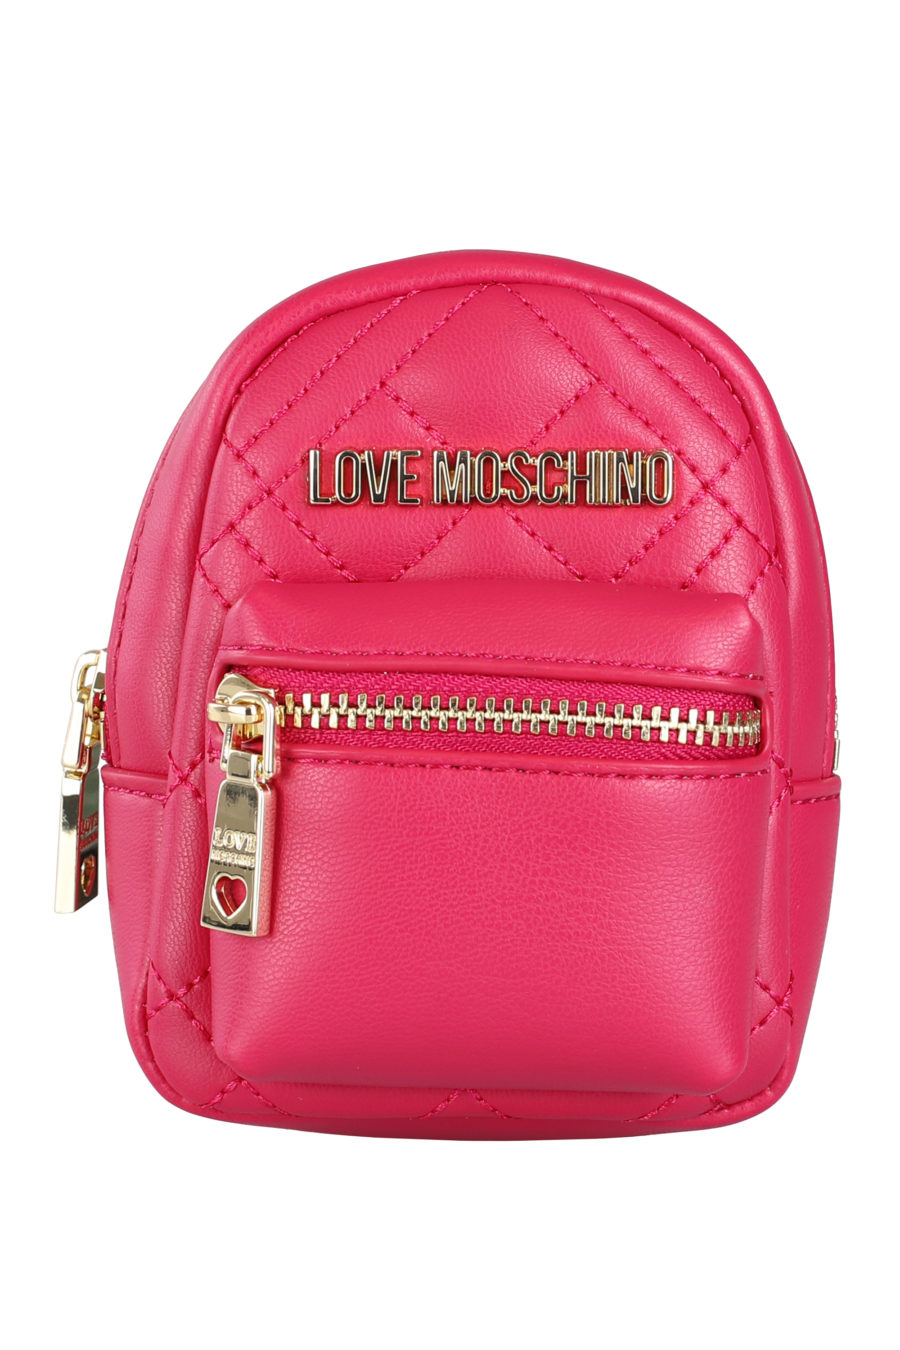 Porte-clés mini sac à dos rose - IMG 9685